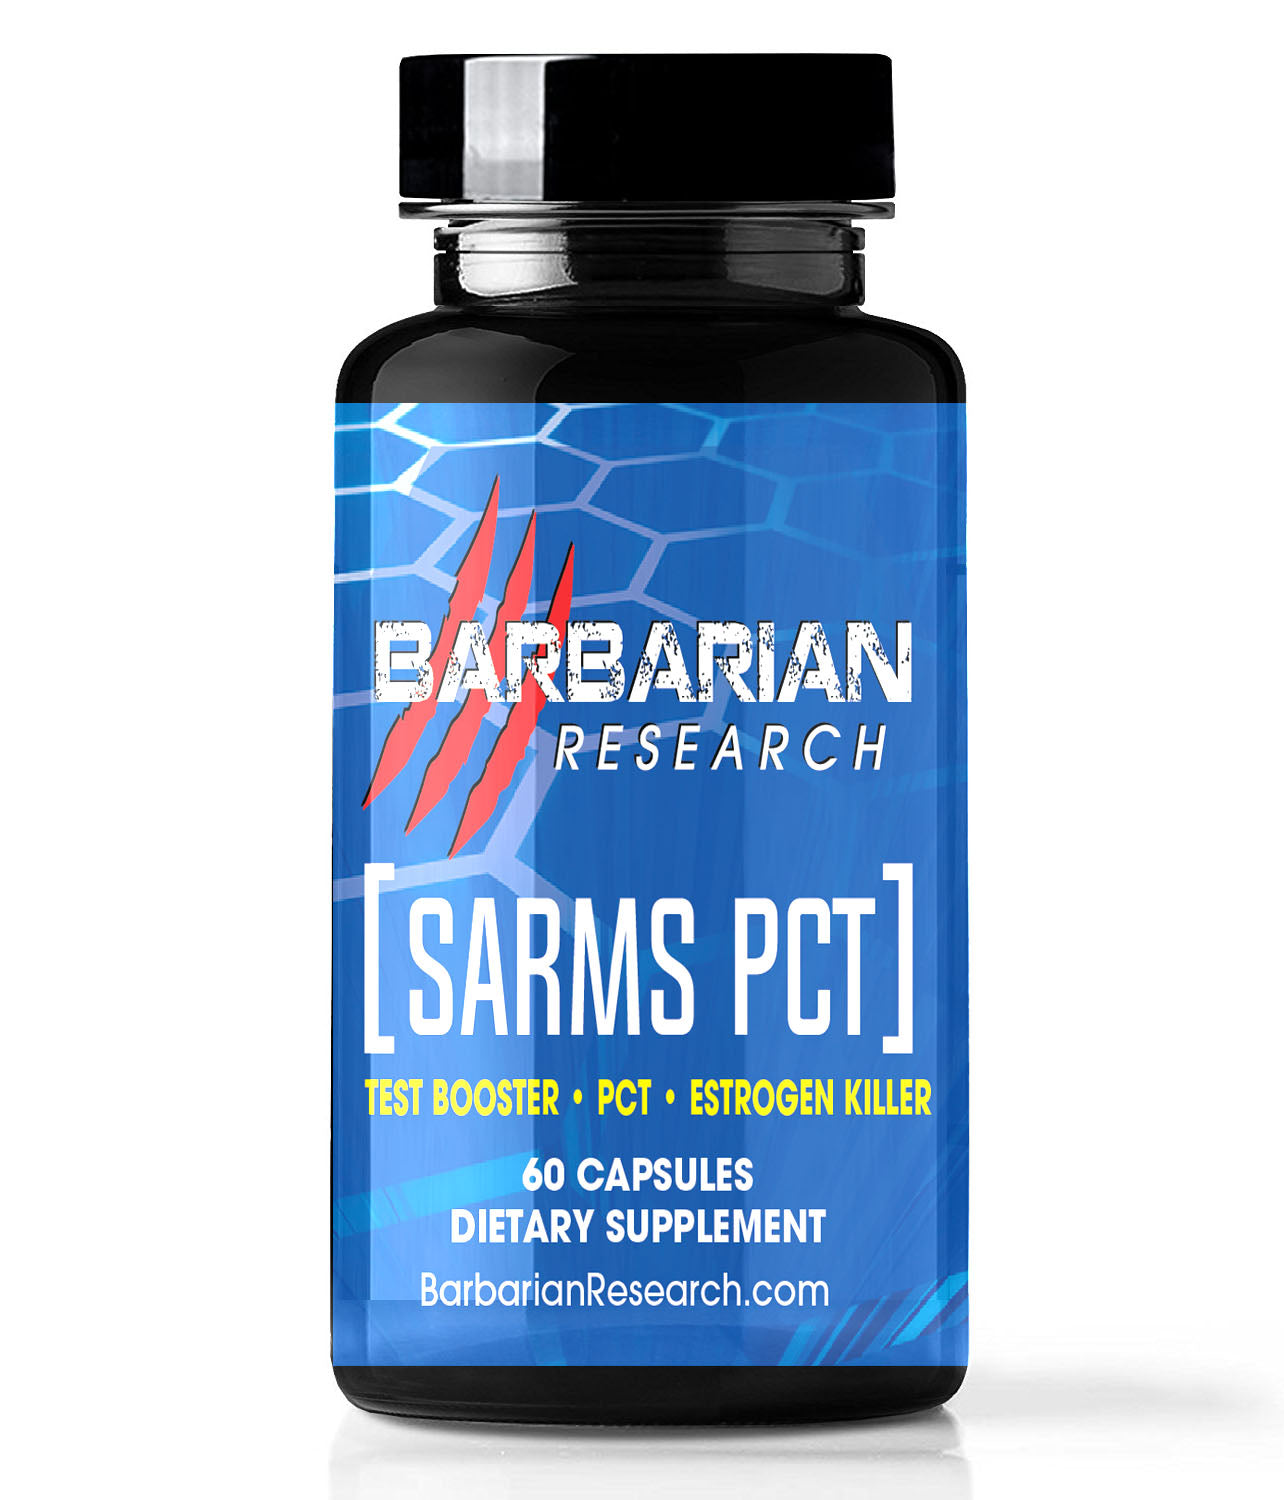 SARMS PCT 60 CAPSULES